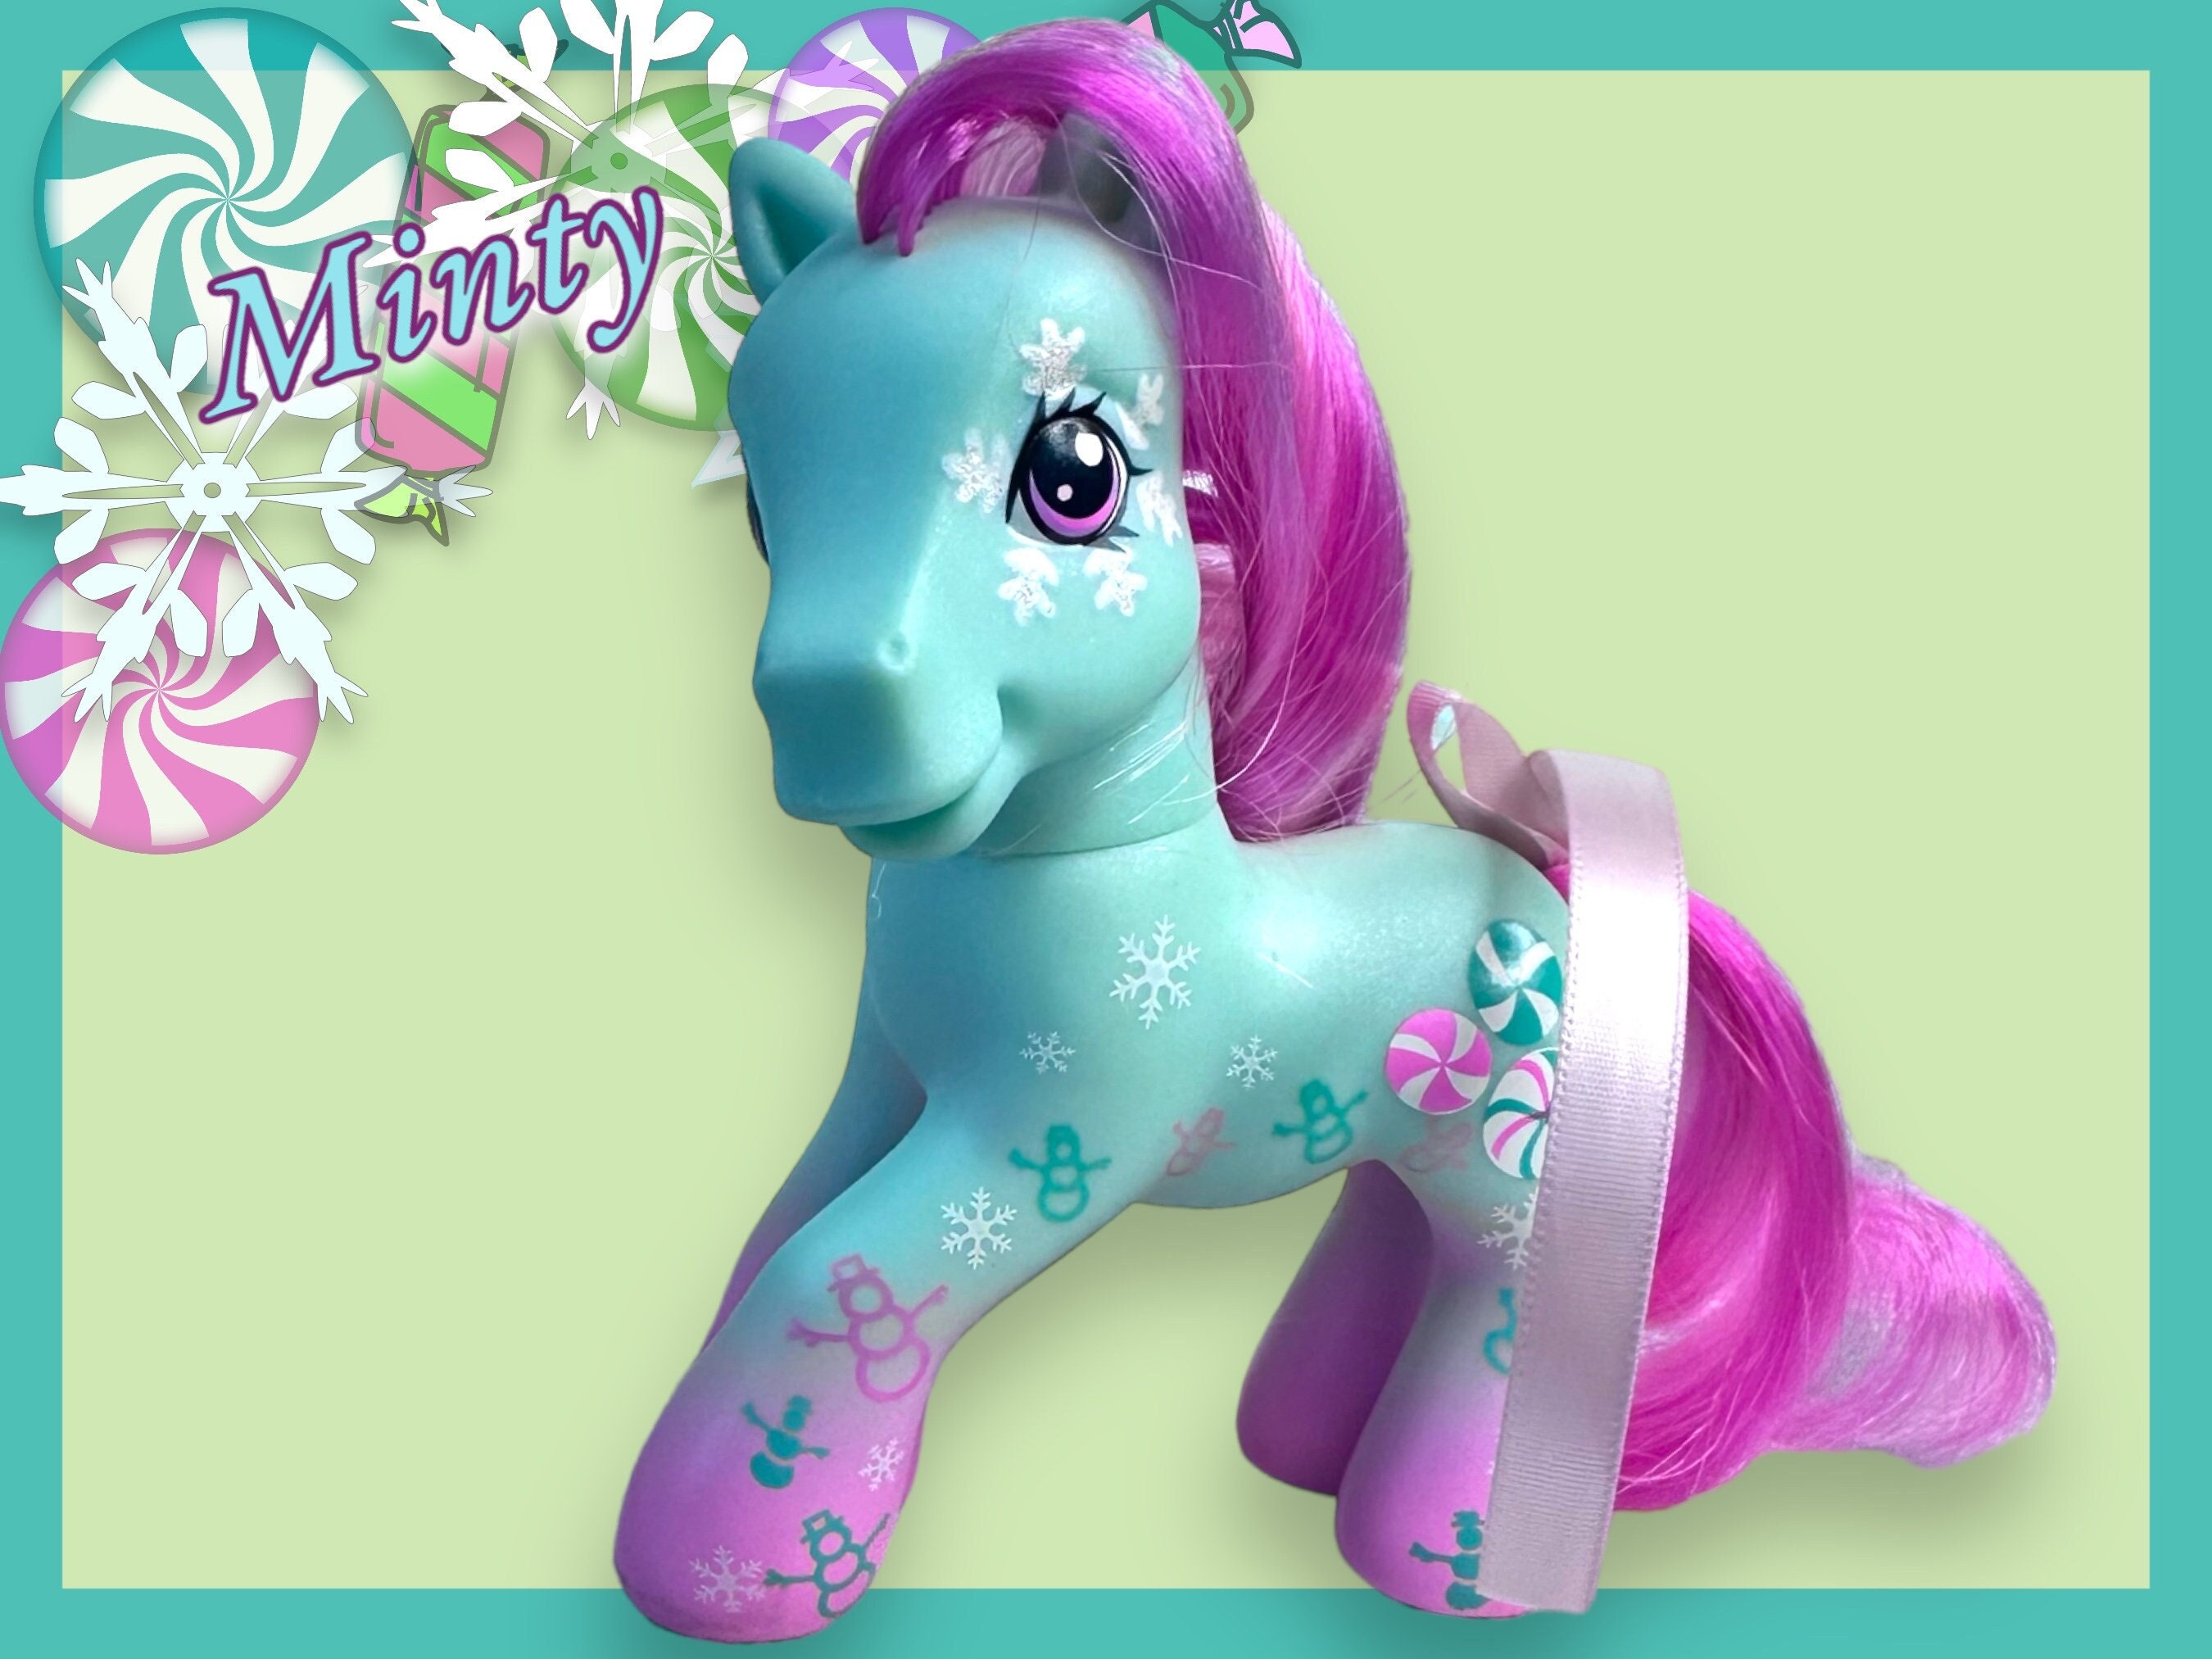 Minty Classic Pony, My Little Pony, Basic Fun, 35325, cadeaux